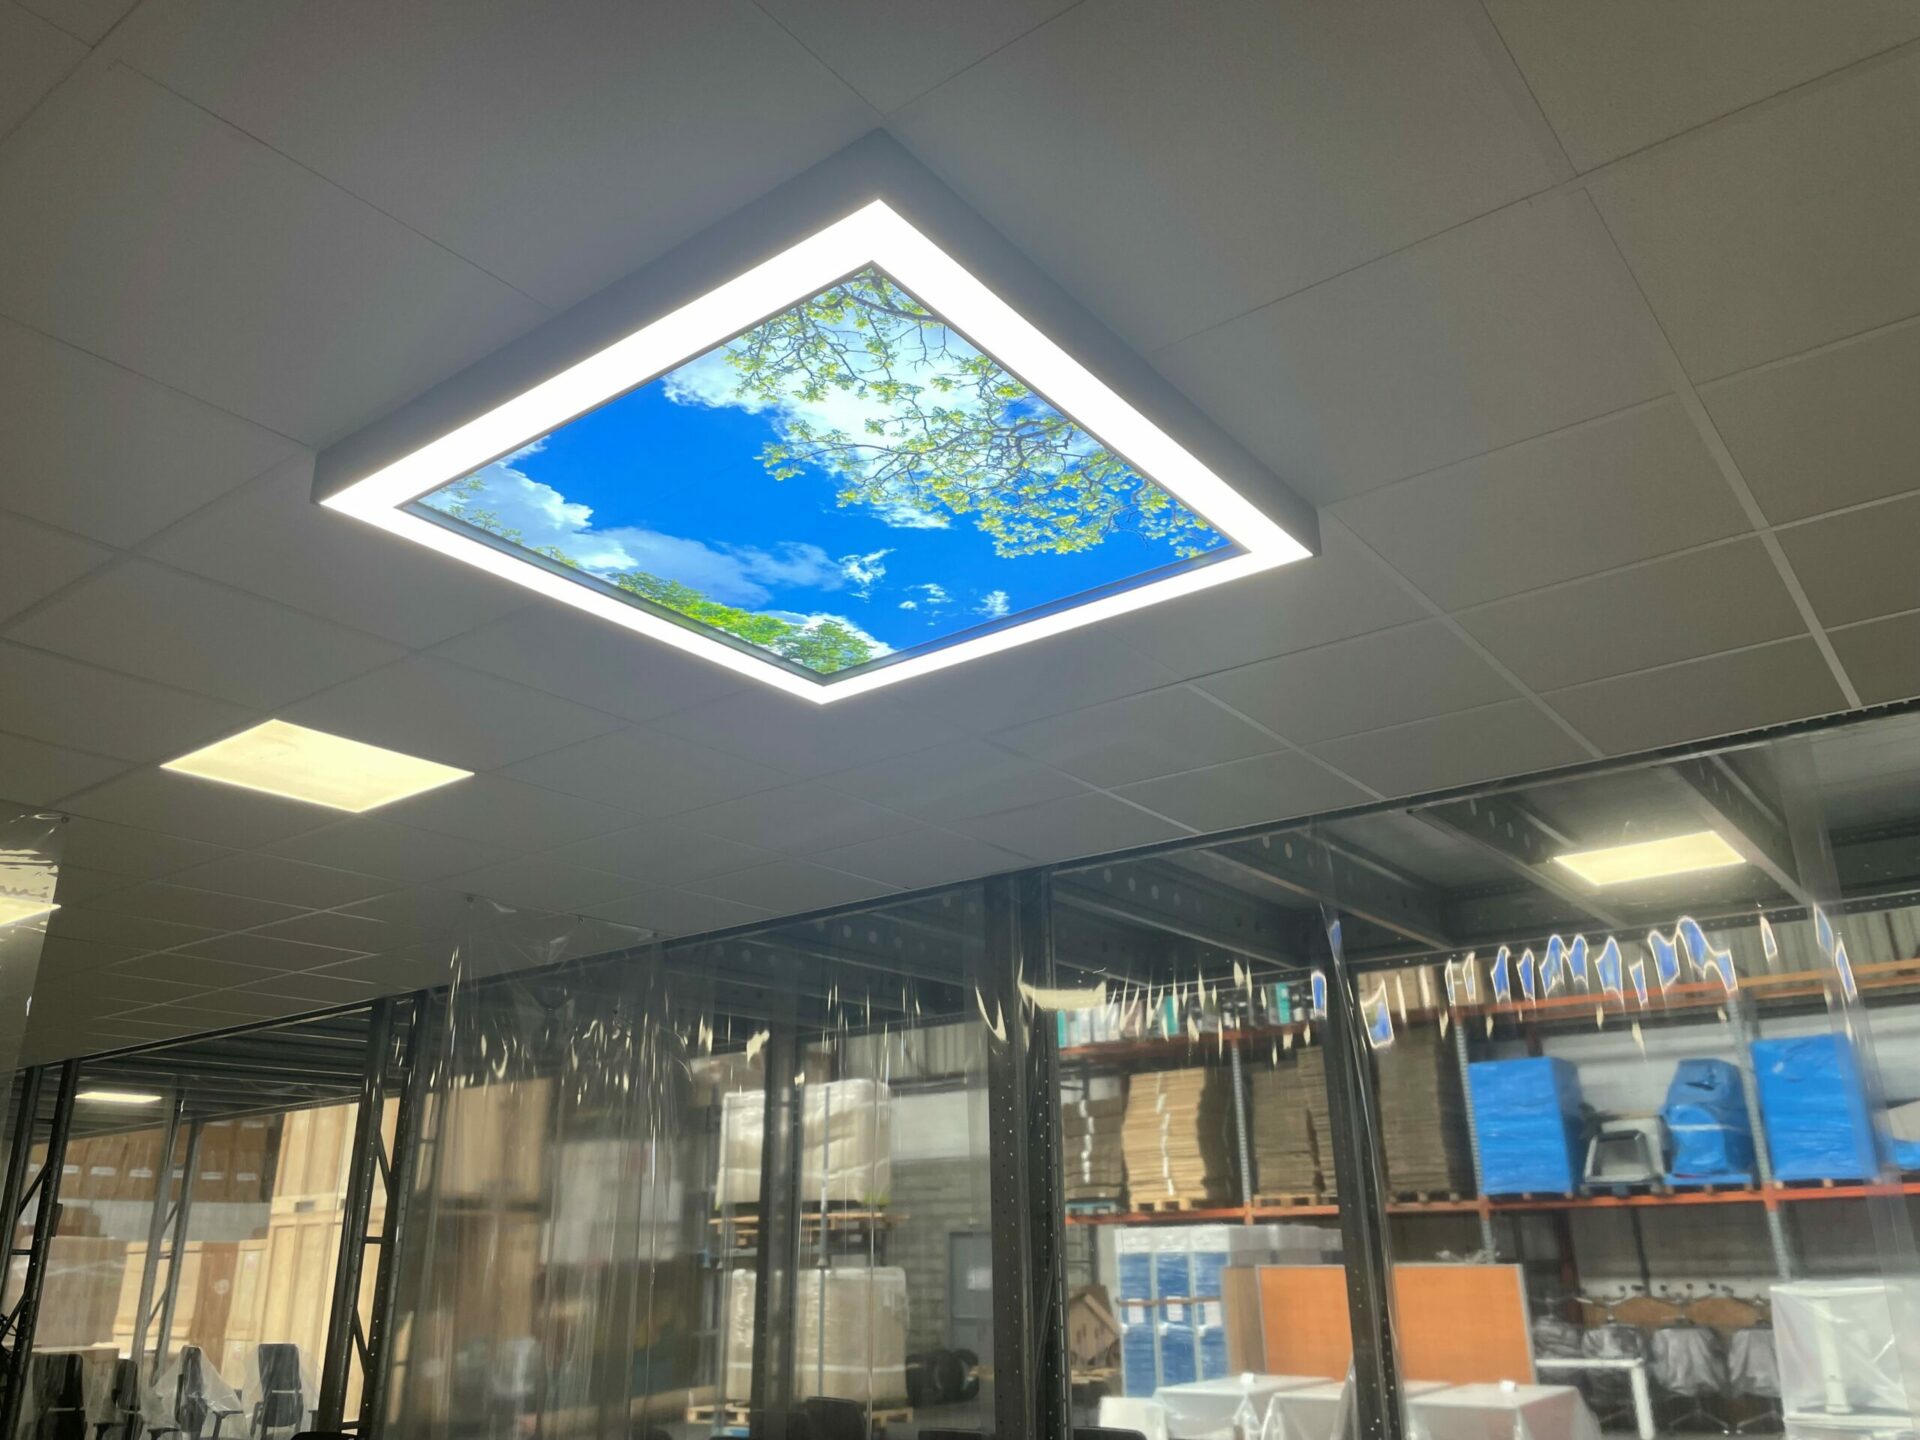 Faux plafond 120x120 cm, installé dans une salle de travail qui ne possède aucune lumière naturelle.